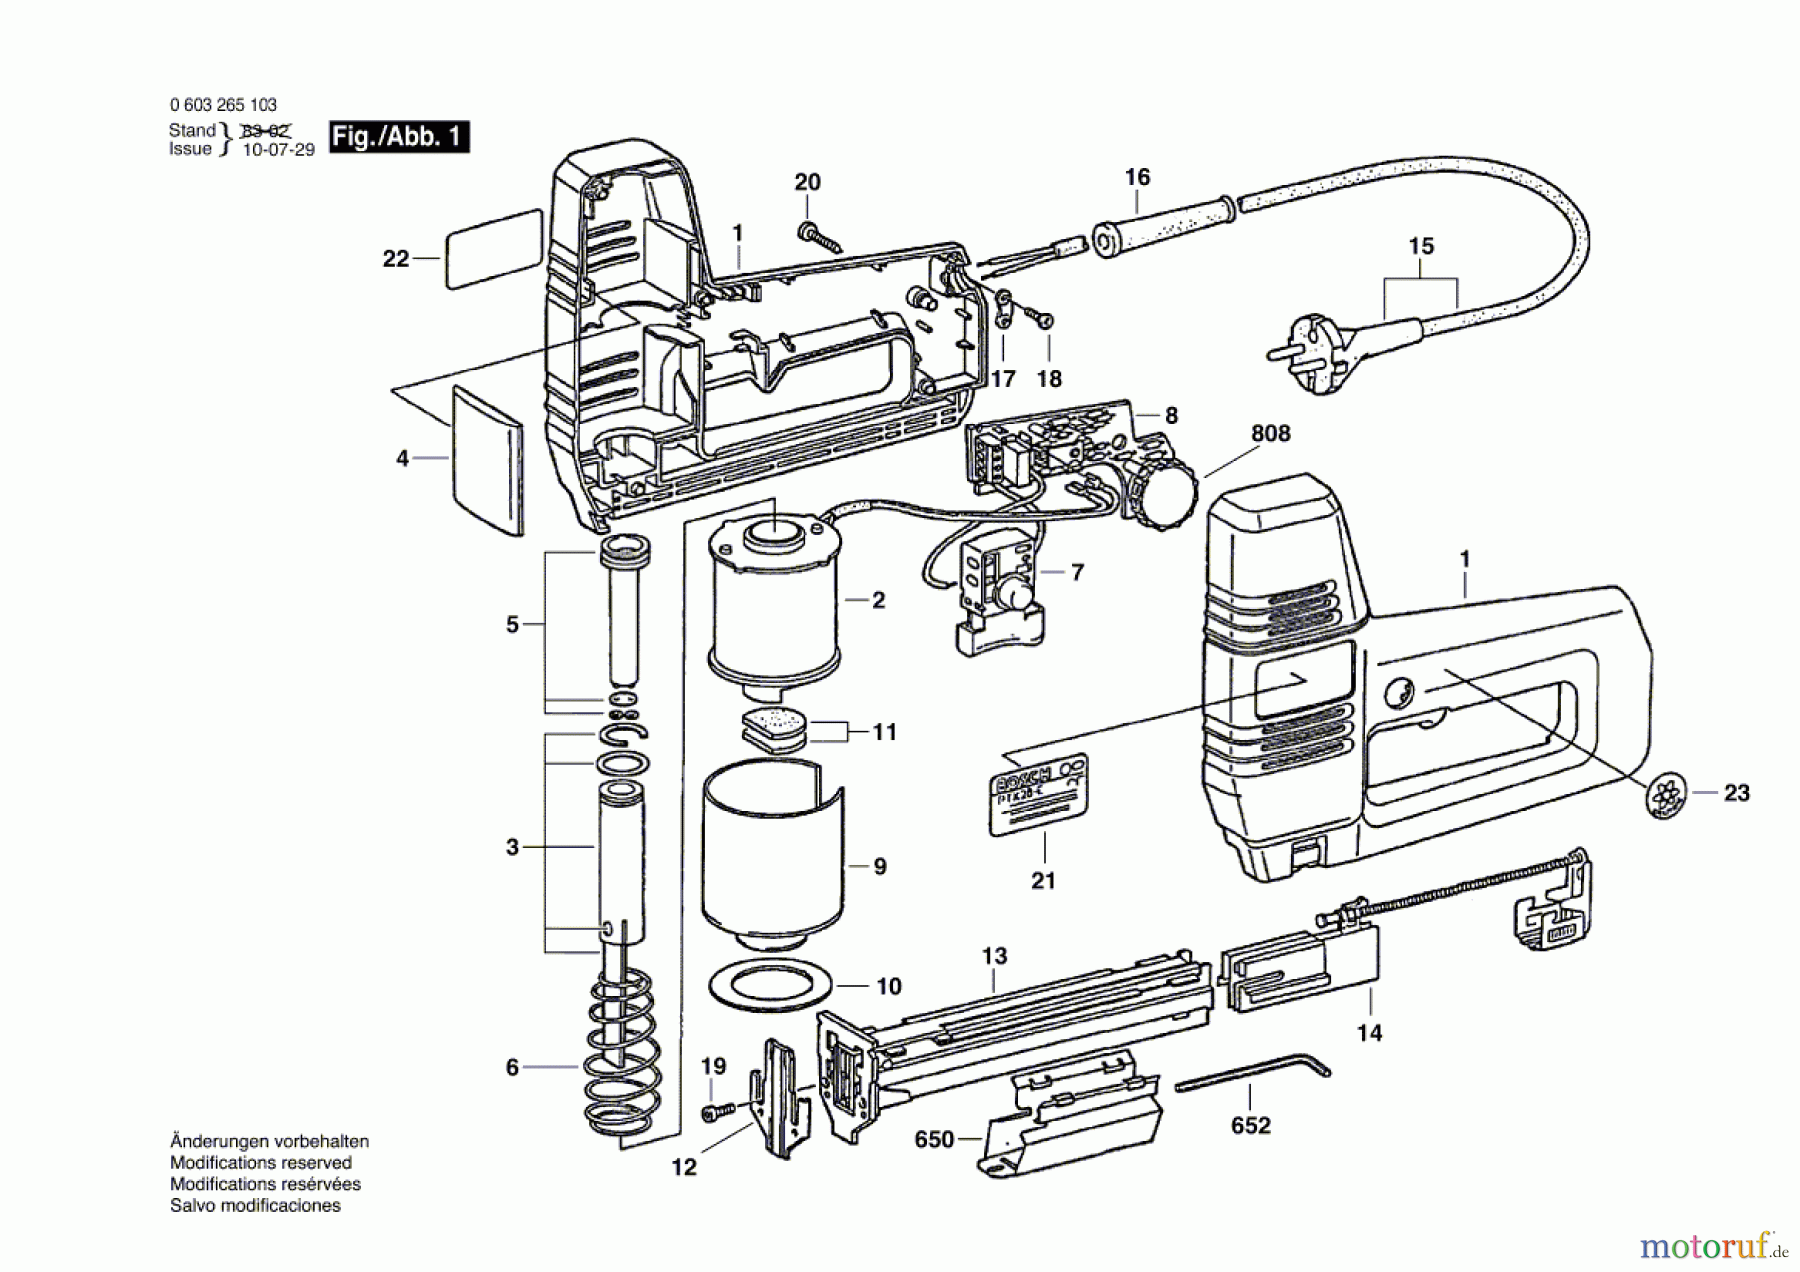  Bosch Werkzeug Tacker PTK 28 E Seite 1